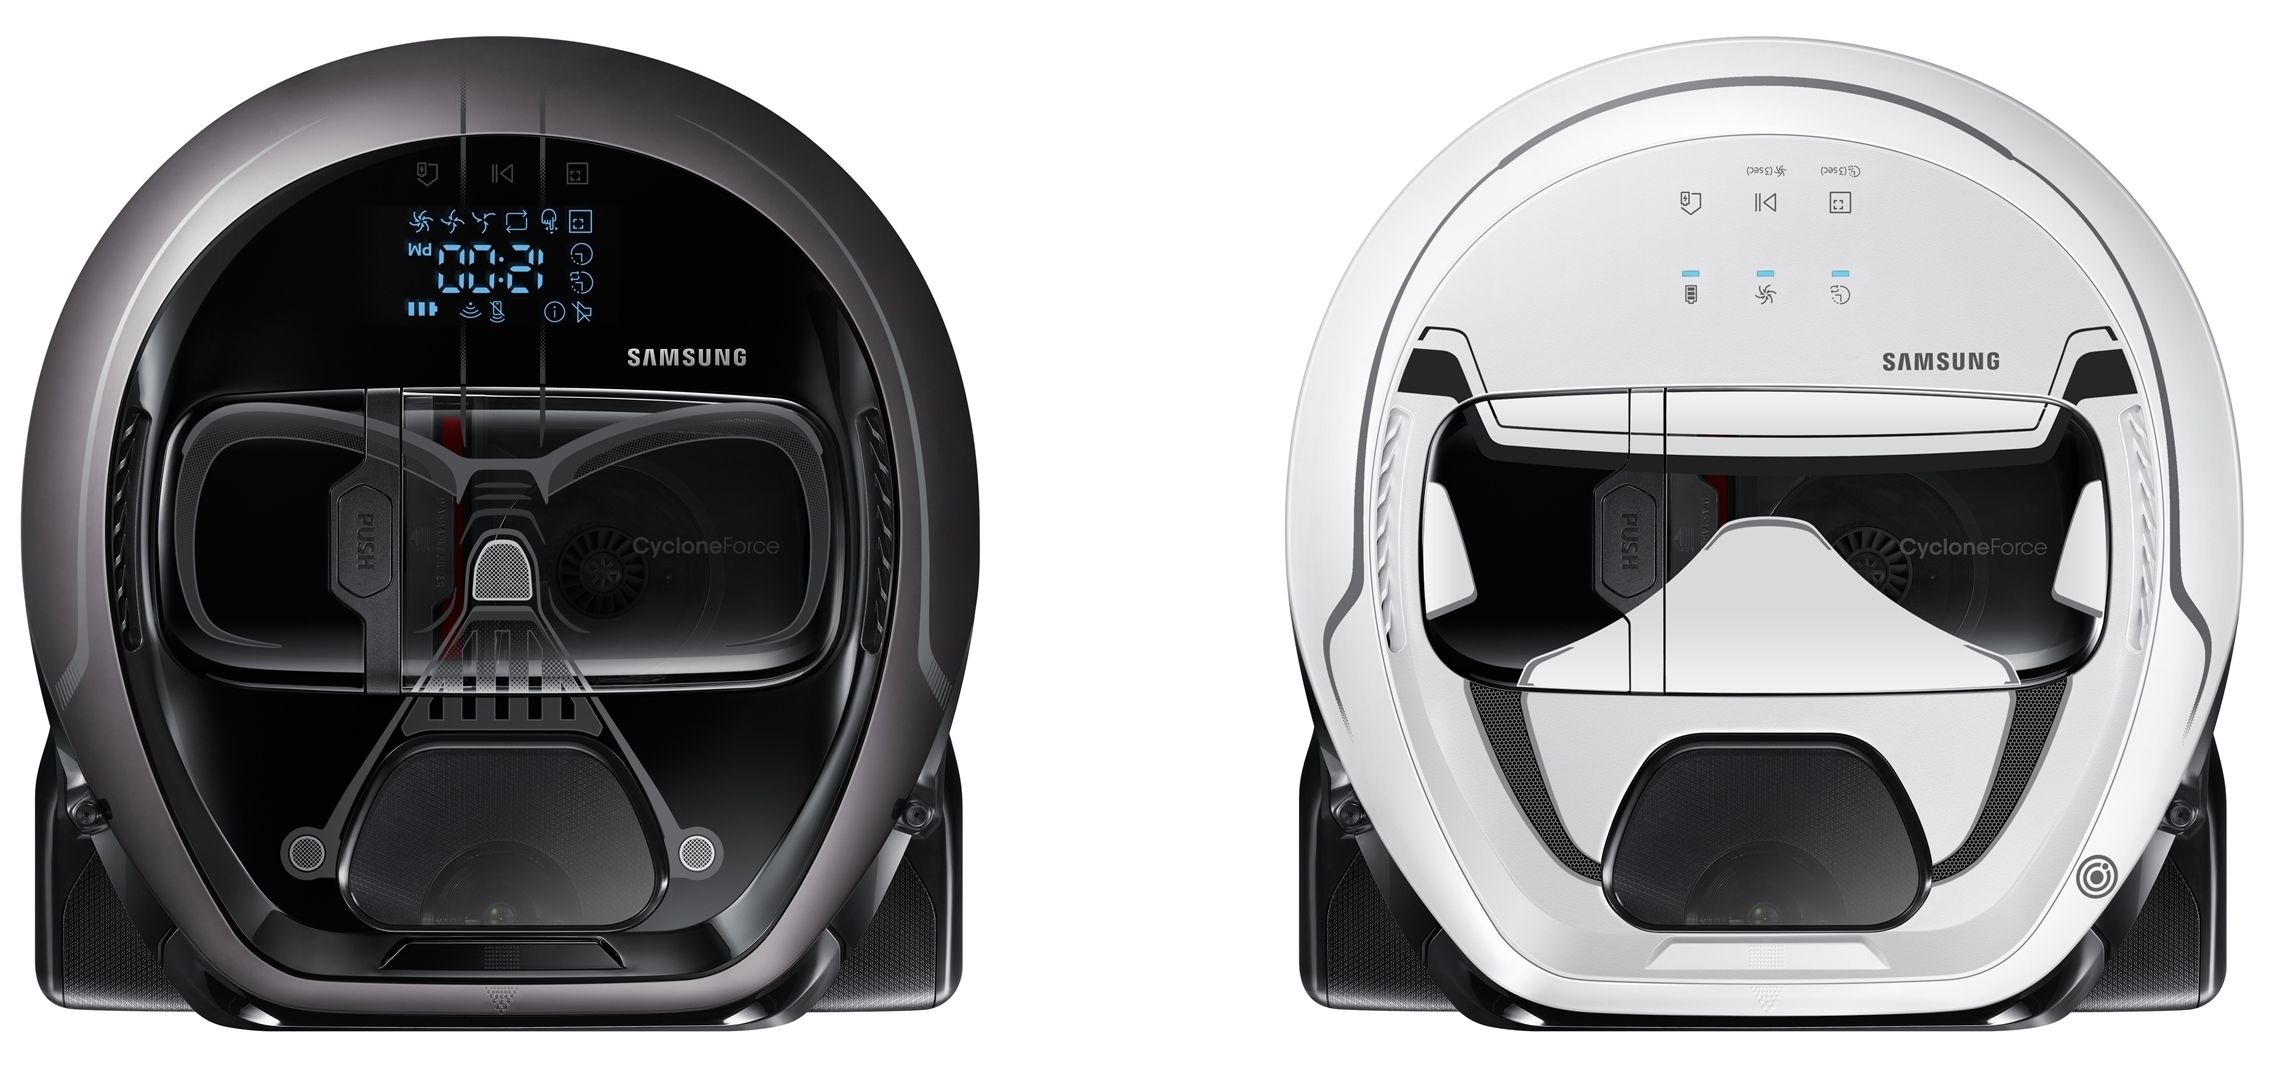 Samsung lanzará aspiradoras inteligentes al estilo Star Wars